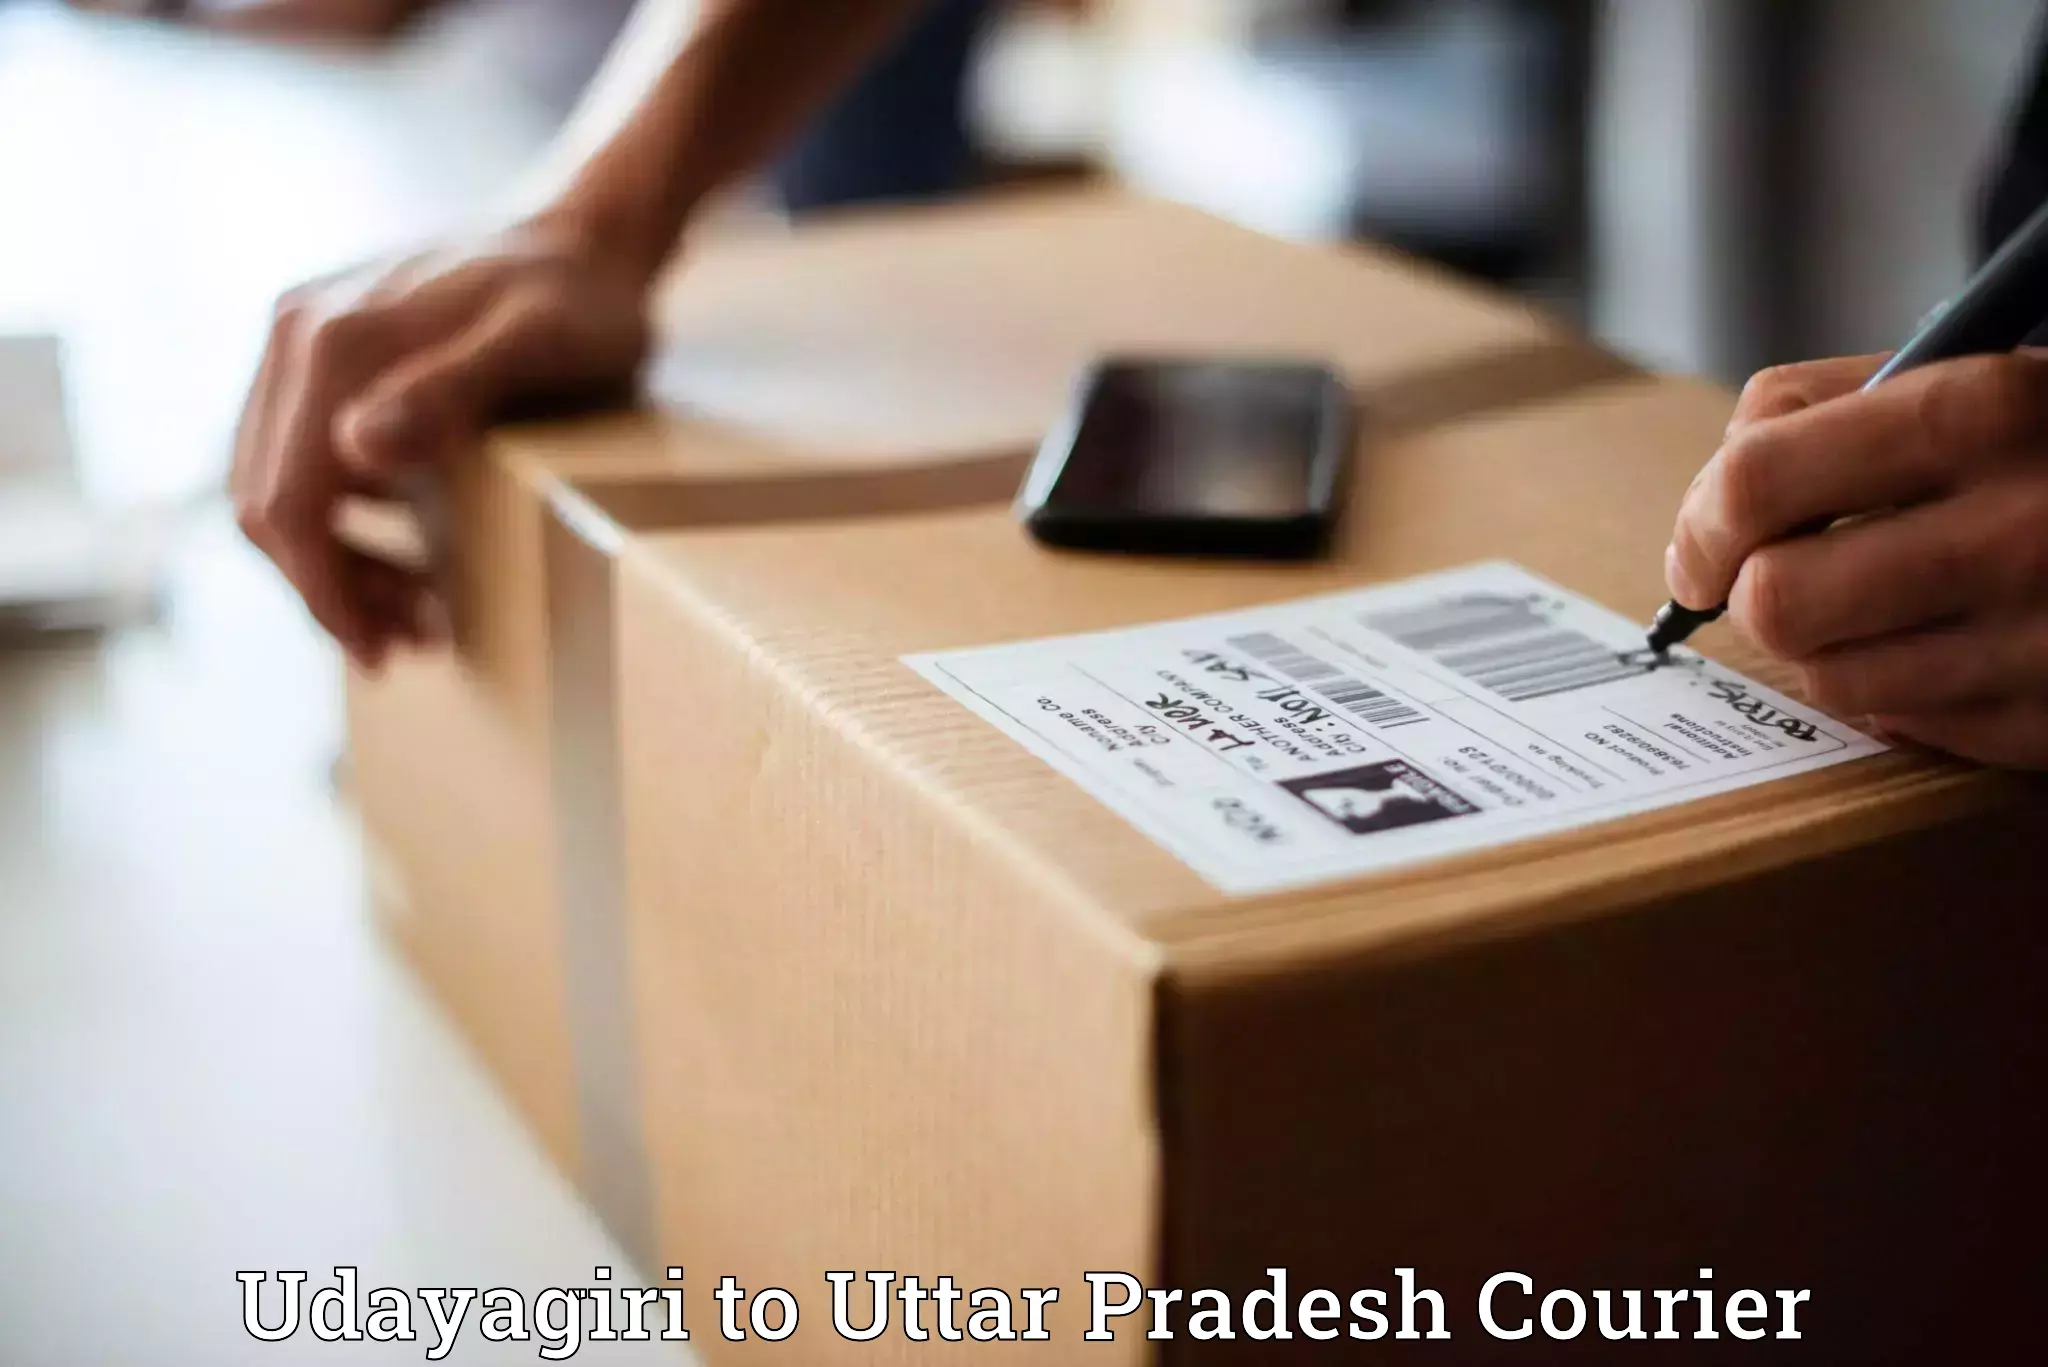 Courier service partnerships Udayagiri to Sahatwar